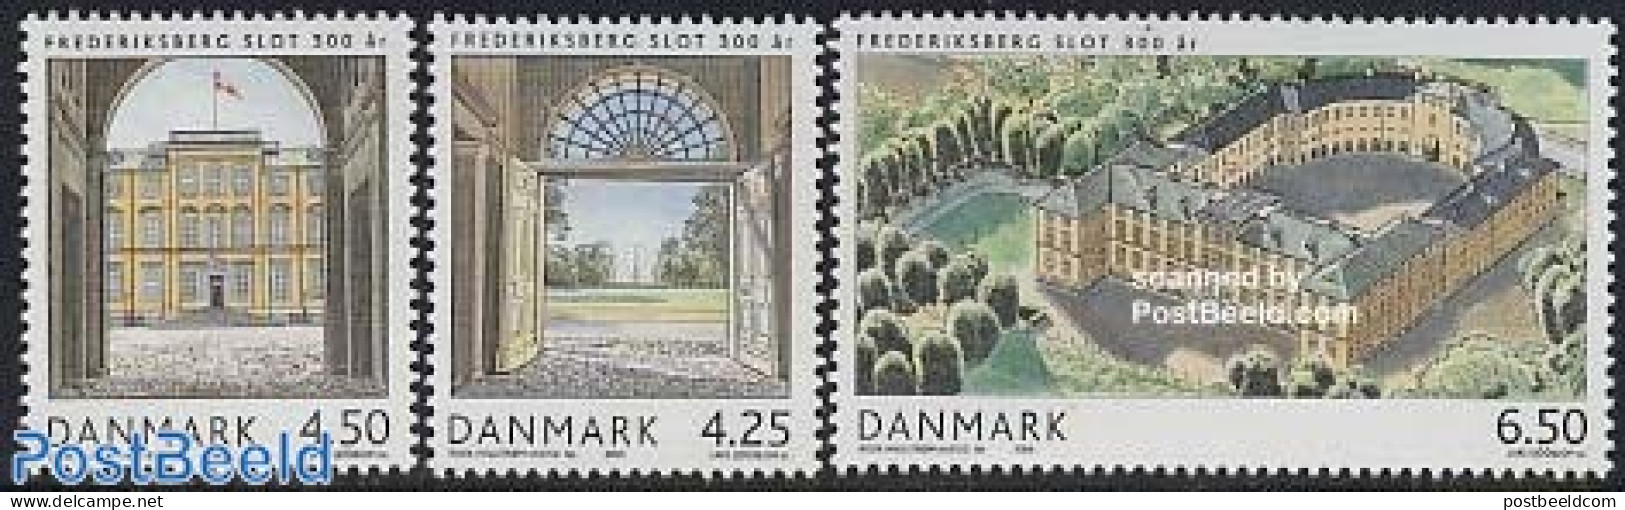 Denmark 2004 Frederiksberg 3v, Mint NH, Art - Castles & Fortifications - Ongebruikt